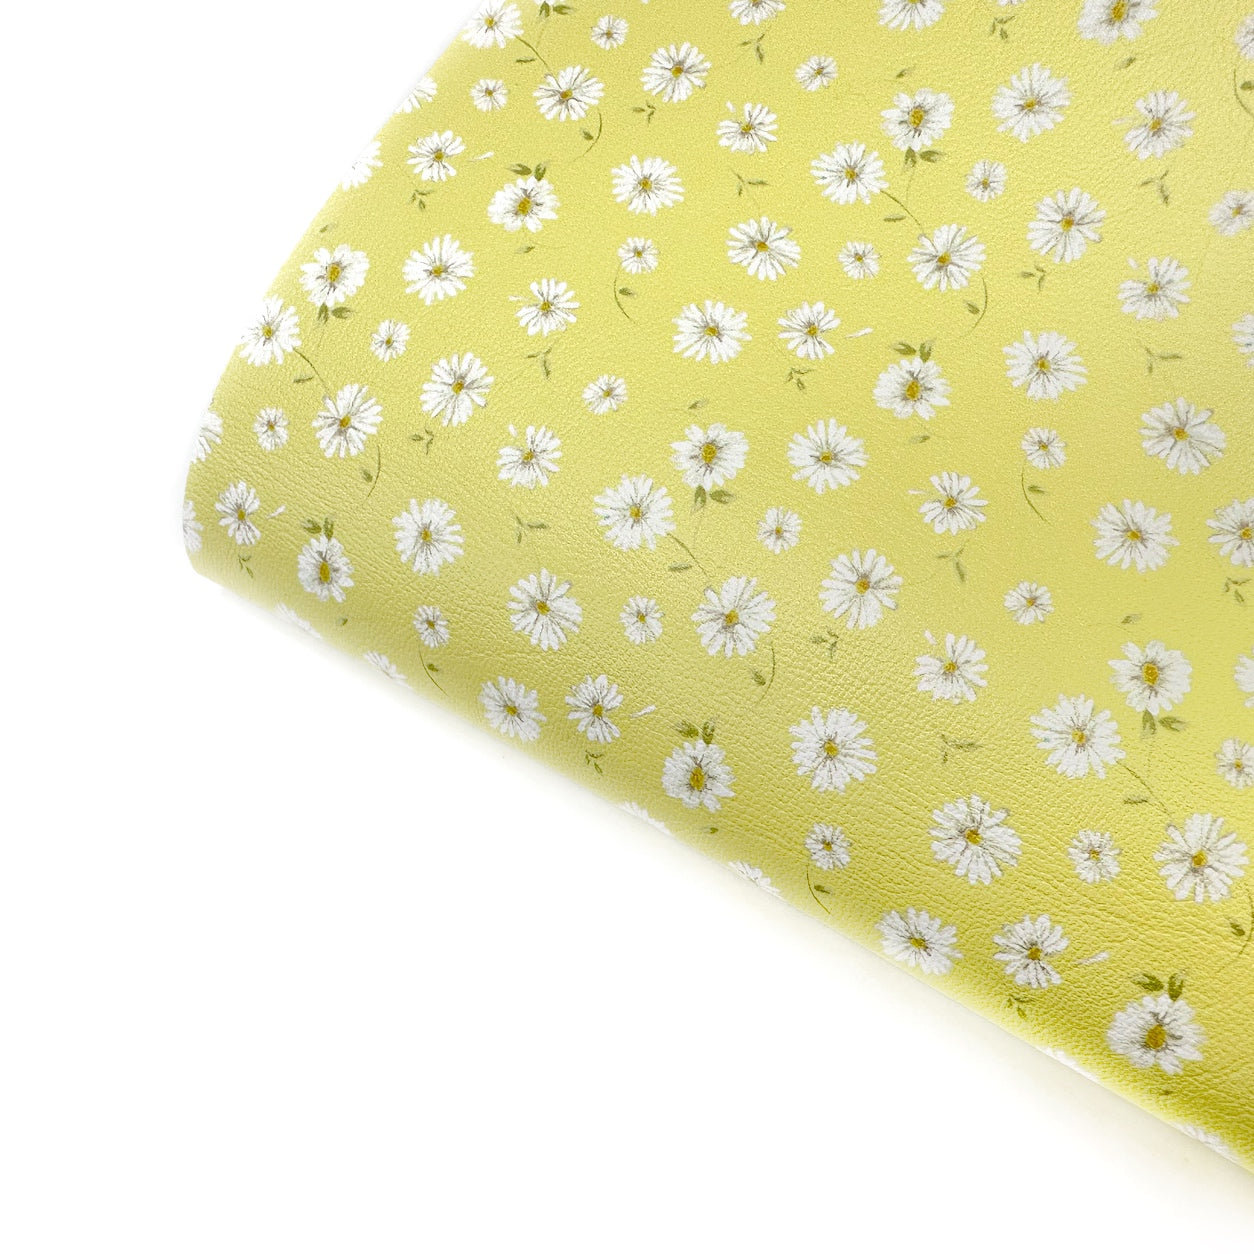 Bright Lemon Daisy Petals Premium Faux Leather Fabric Sheets